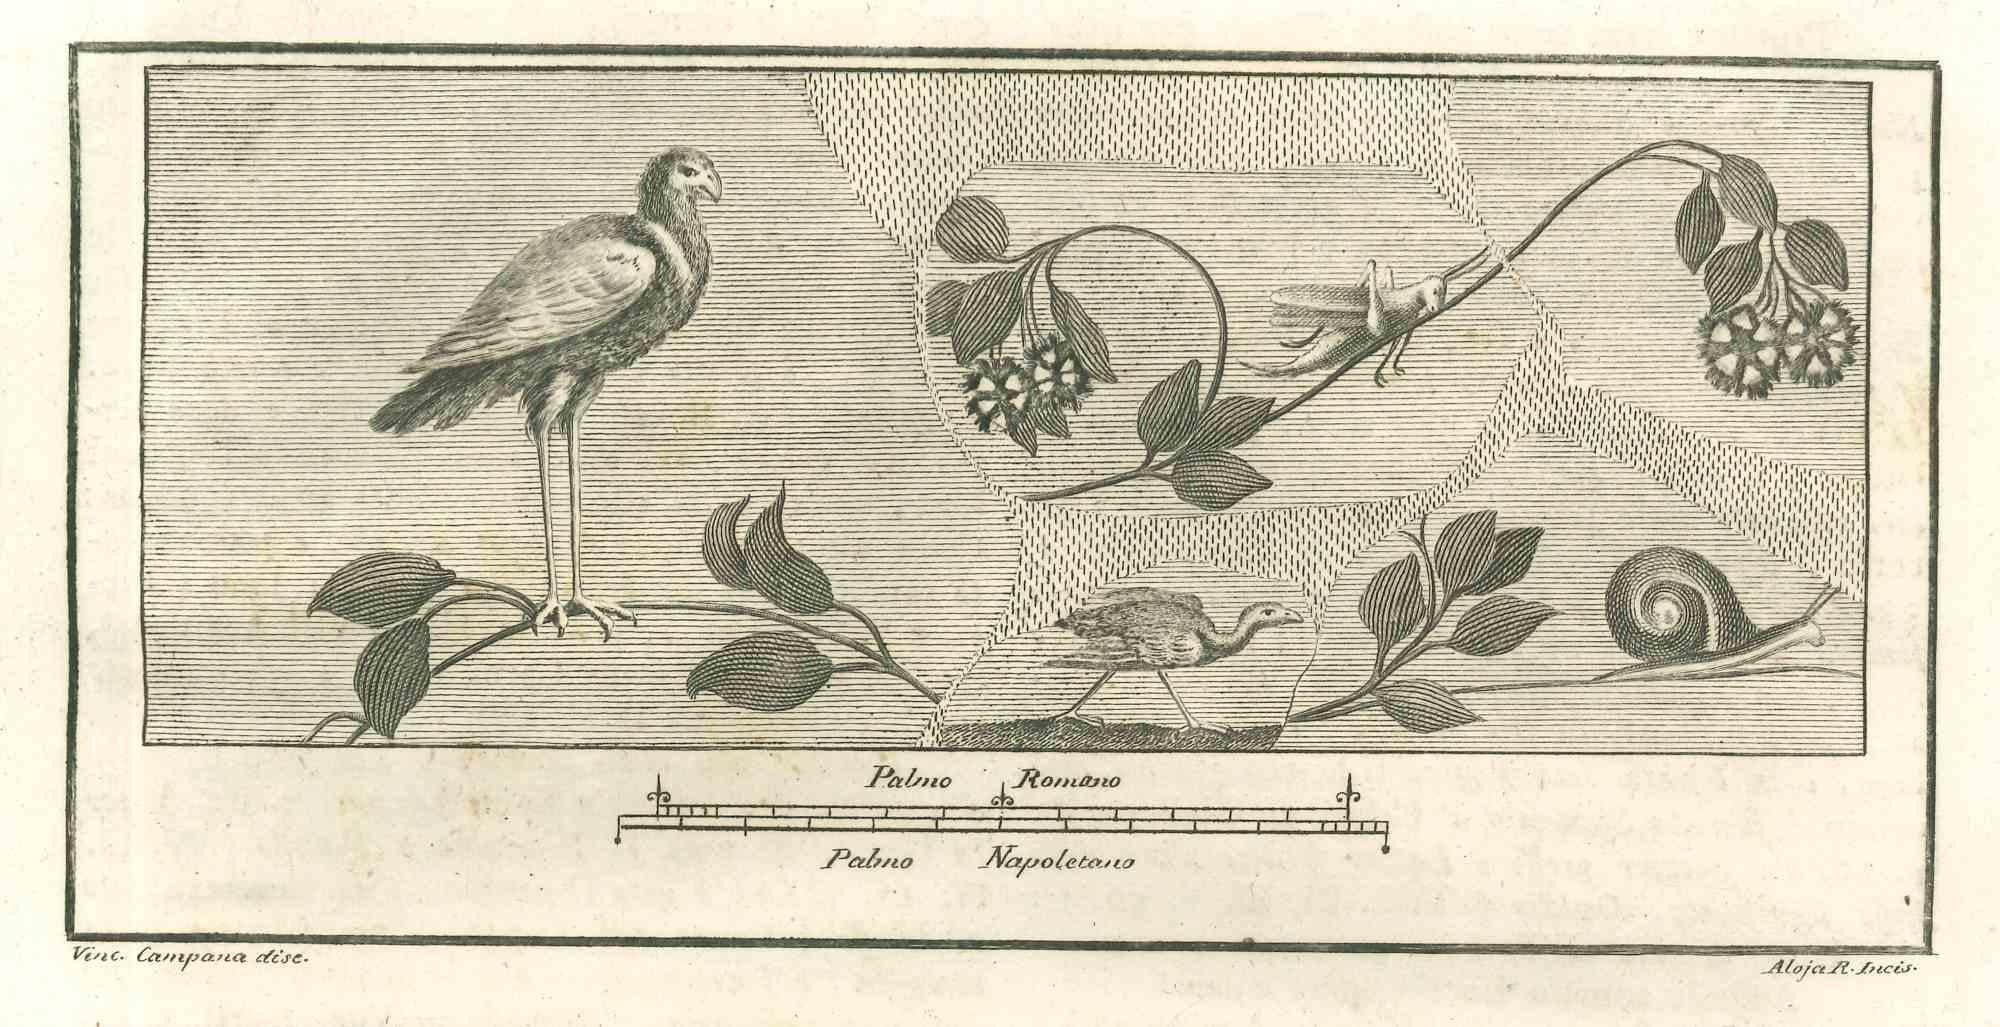 Birds Fresco from "Antiquities of Herculaneum" ist eine Radierung auf Papier von Giuseppe Aloja aus dem 18. Jahrhundert.

Signiert auf der Platte.

Gute Bedingungen.

Die Radierung gehört zu der Druckserie "Antiquities of Herculaneum Exposed"